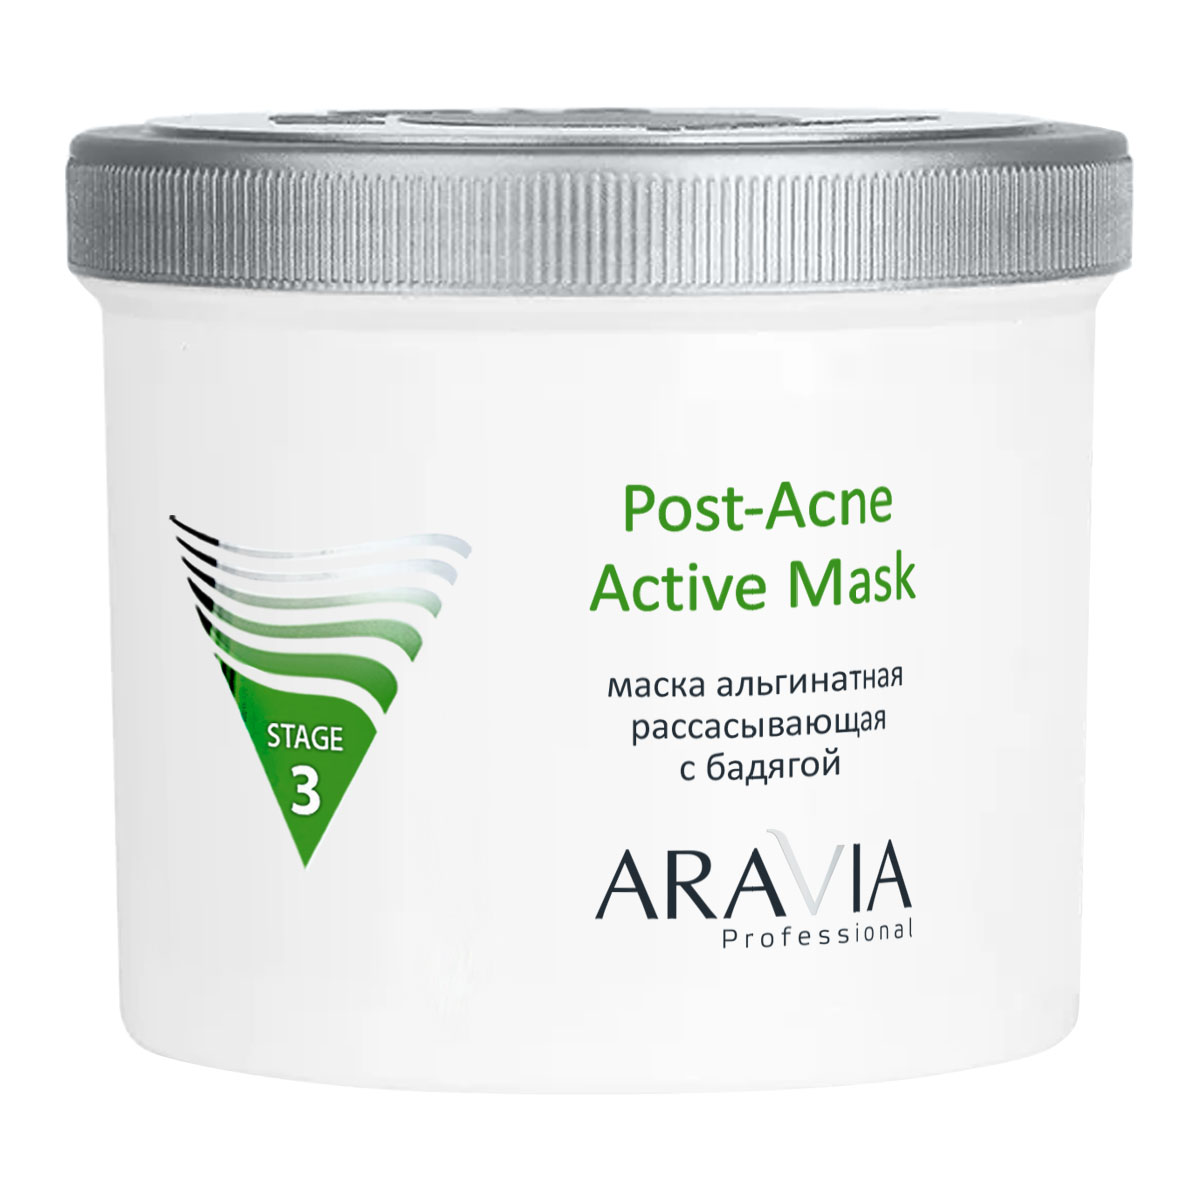 альгинатная маска ocare для проблемной кожи с бадягой и хвощем 30 г Aravia Professional Альгинатная рассасывающая маска с бадягой Post-Acne Active Mask, 550 мл (Aravia Professional, Уход за лицом)